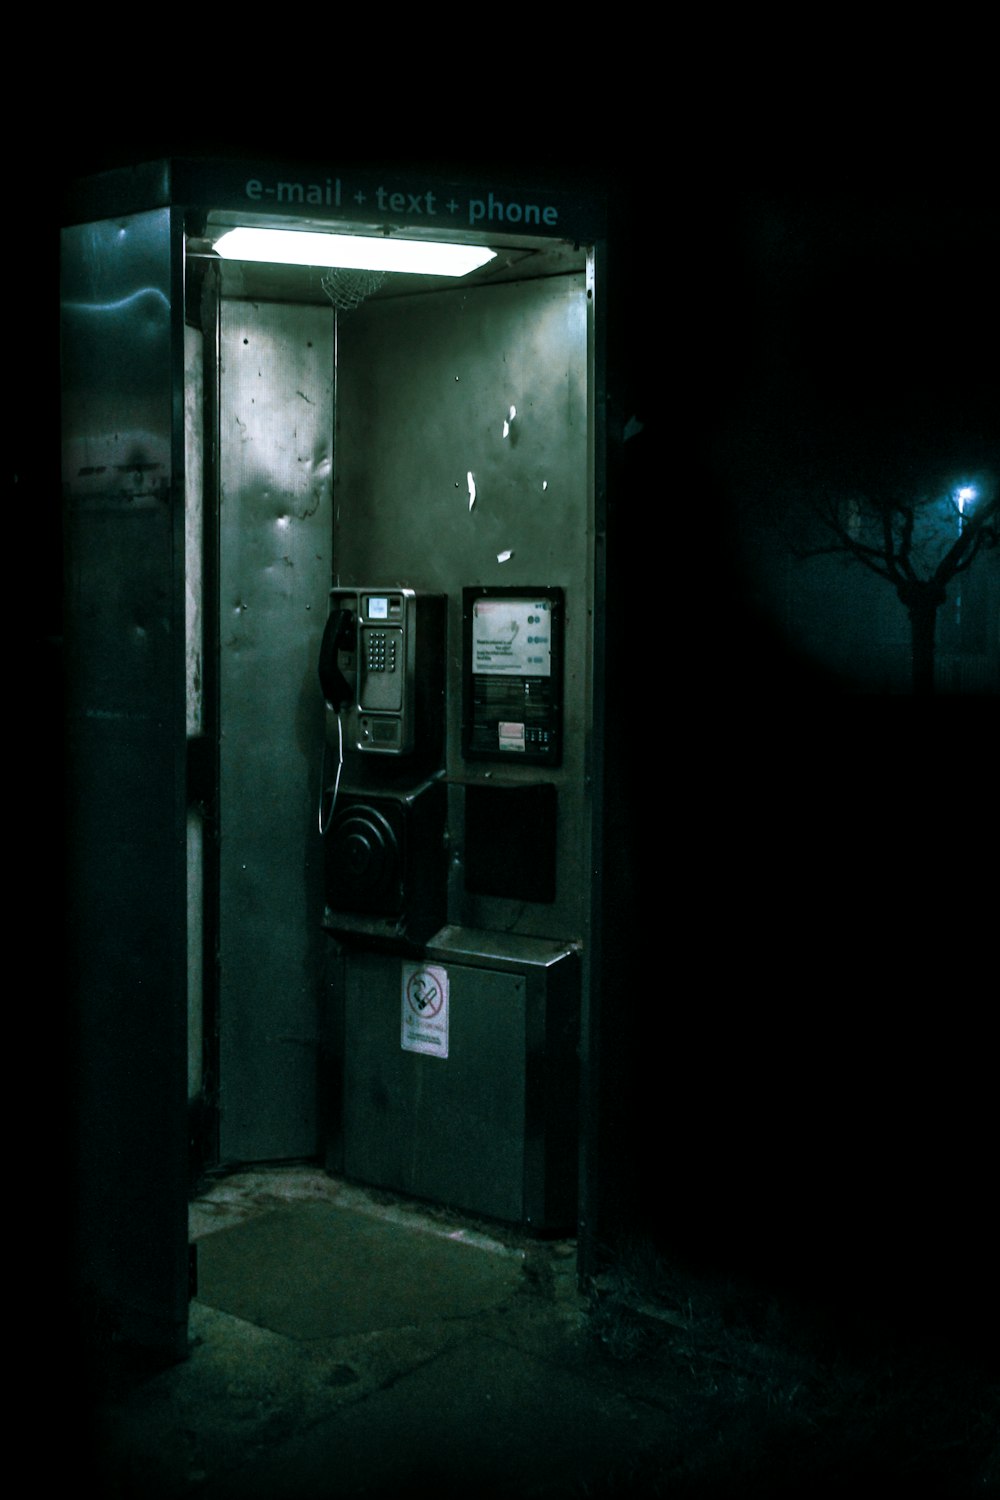 cabine téléphonique verte et noire